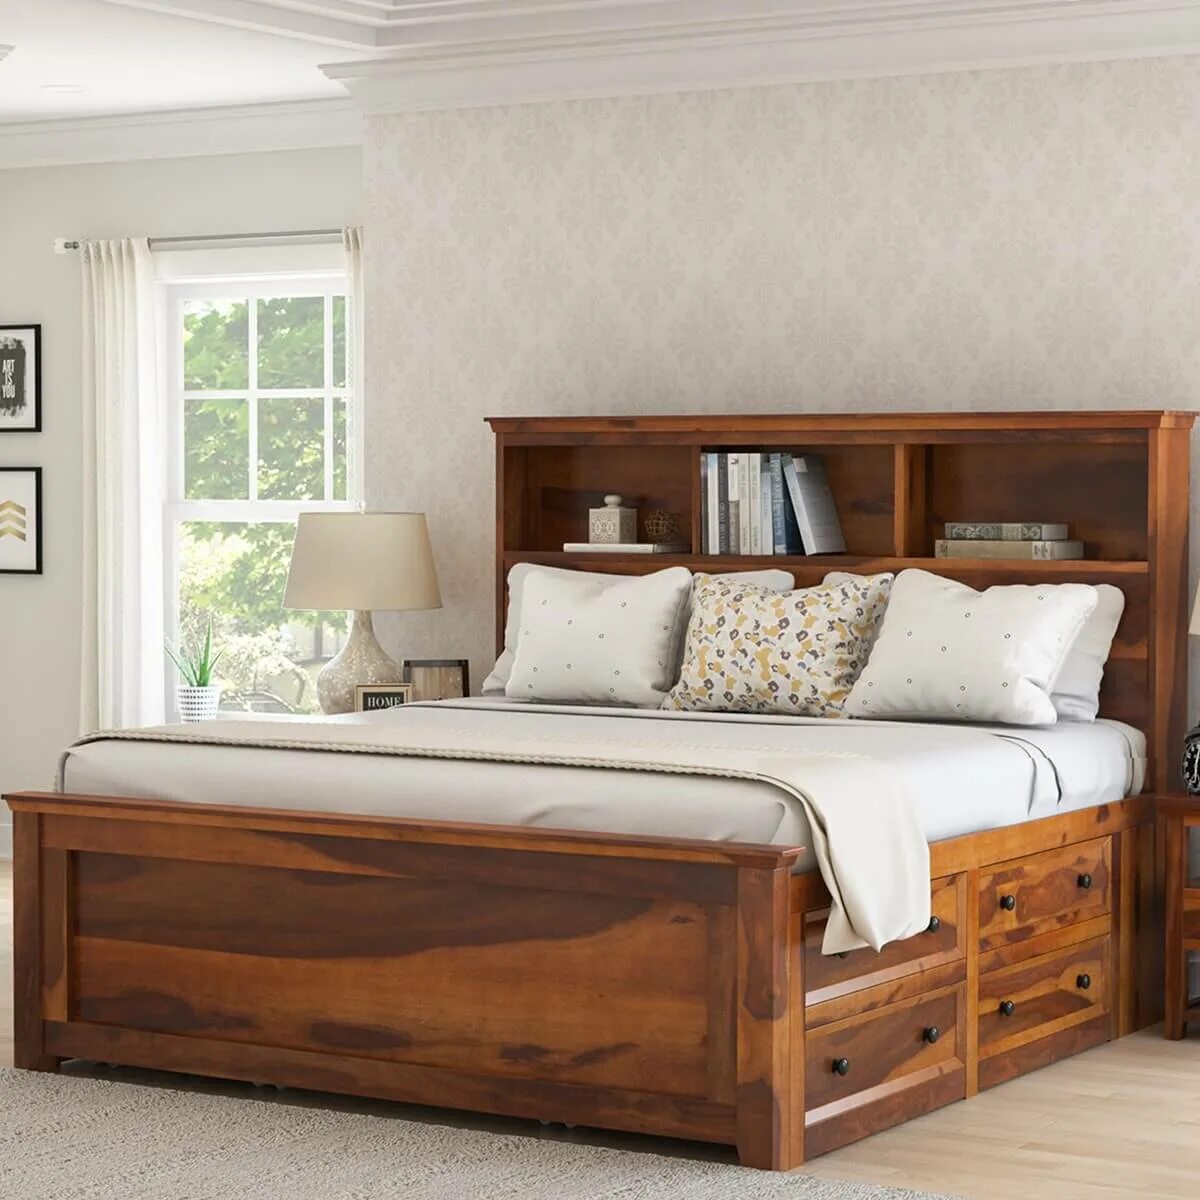 Двуспальная кровать фото дерево. Кровать деревянная. Кровать дерево. Кровать двуспальная деревянная. Кровать из дерева двуспальная.